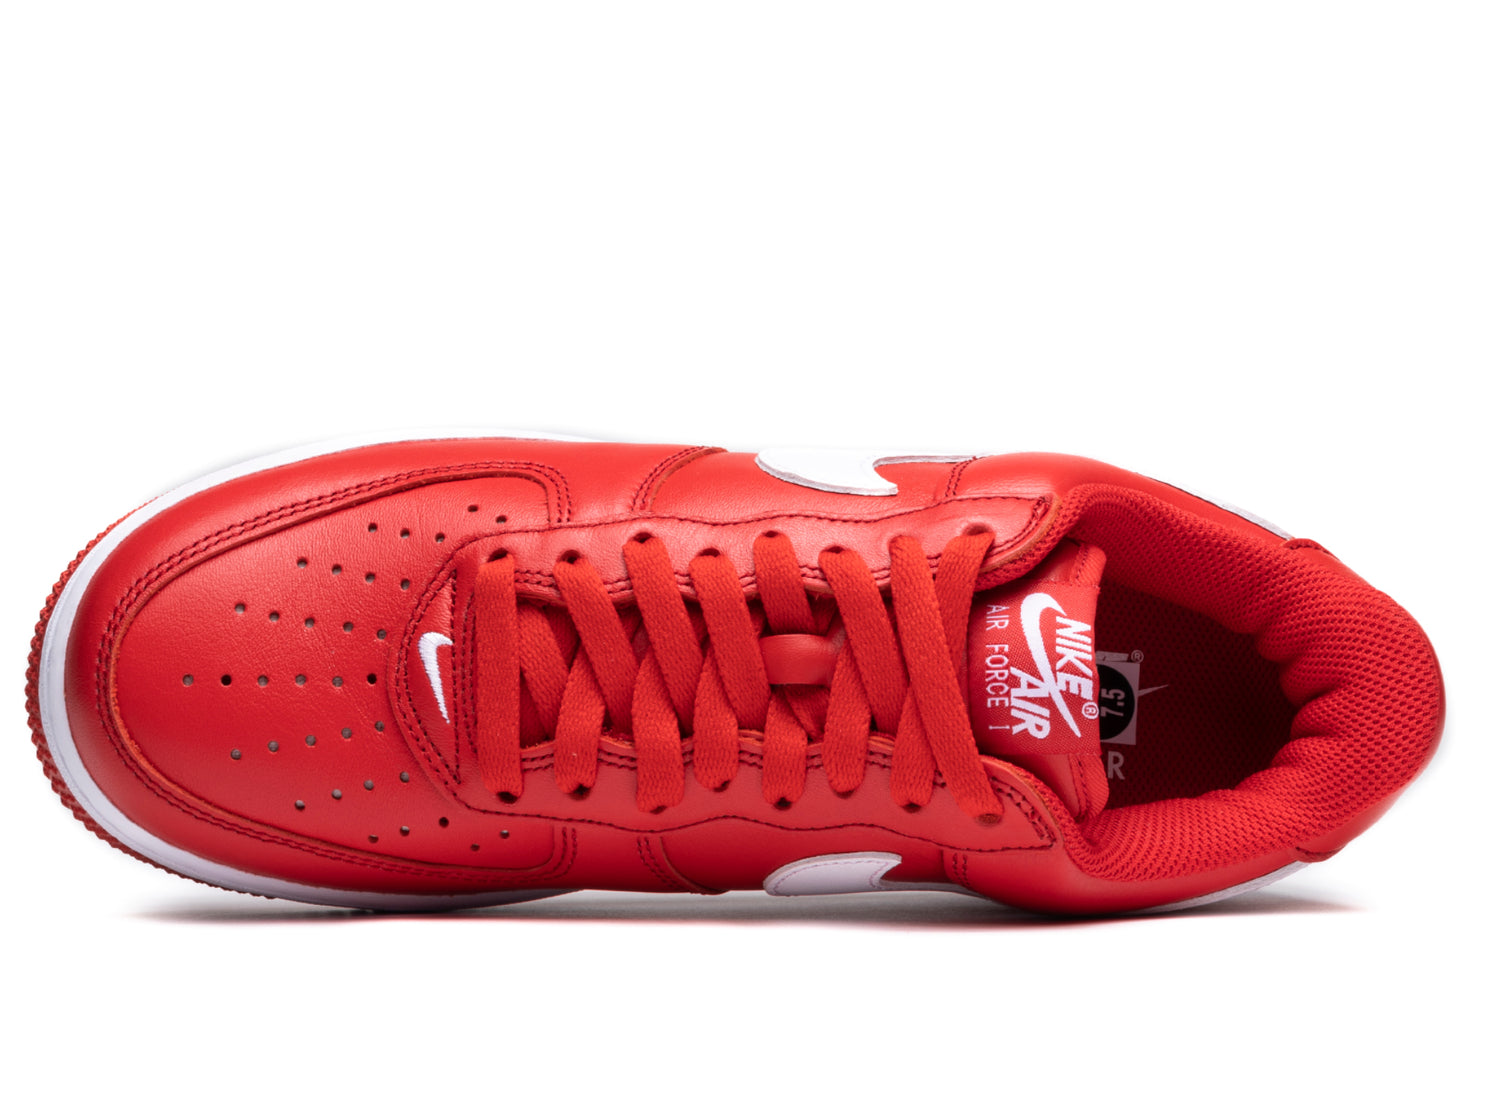 Nike Air Force 1 Low Retro QS Men's Shoes